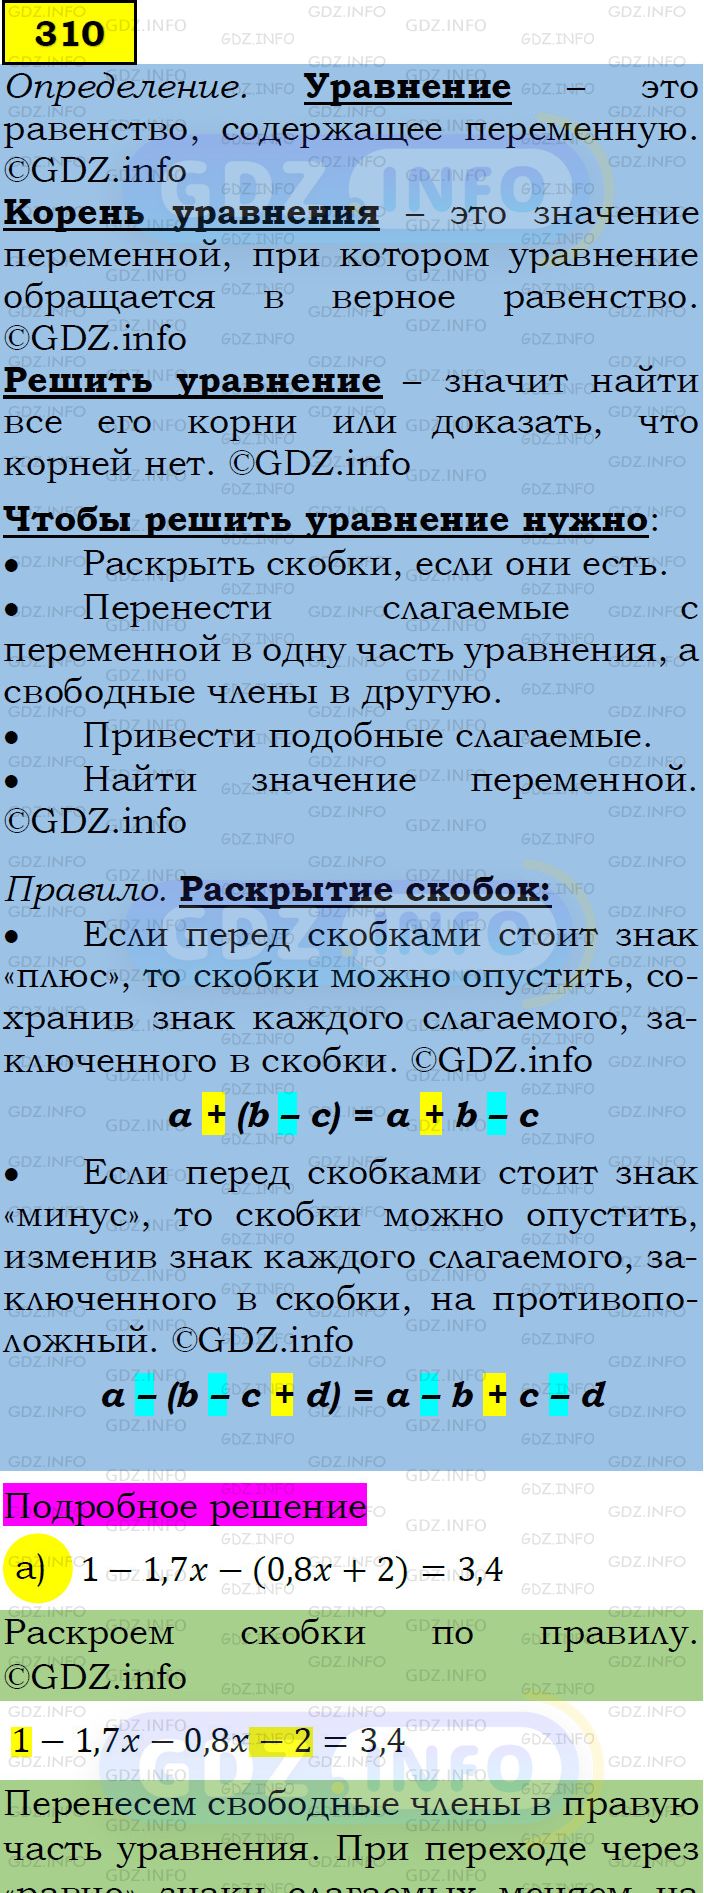 Фото подробного решения: Номер задания №310 из ГДЗ по Алгебре 7 класс: Макарычев Ю.Н.